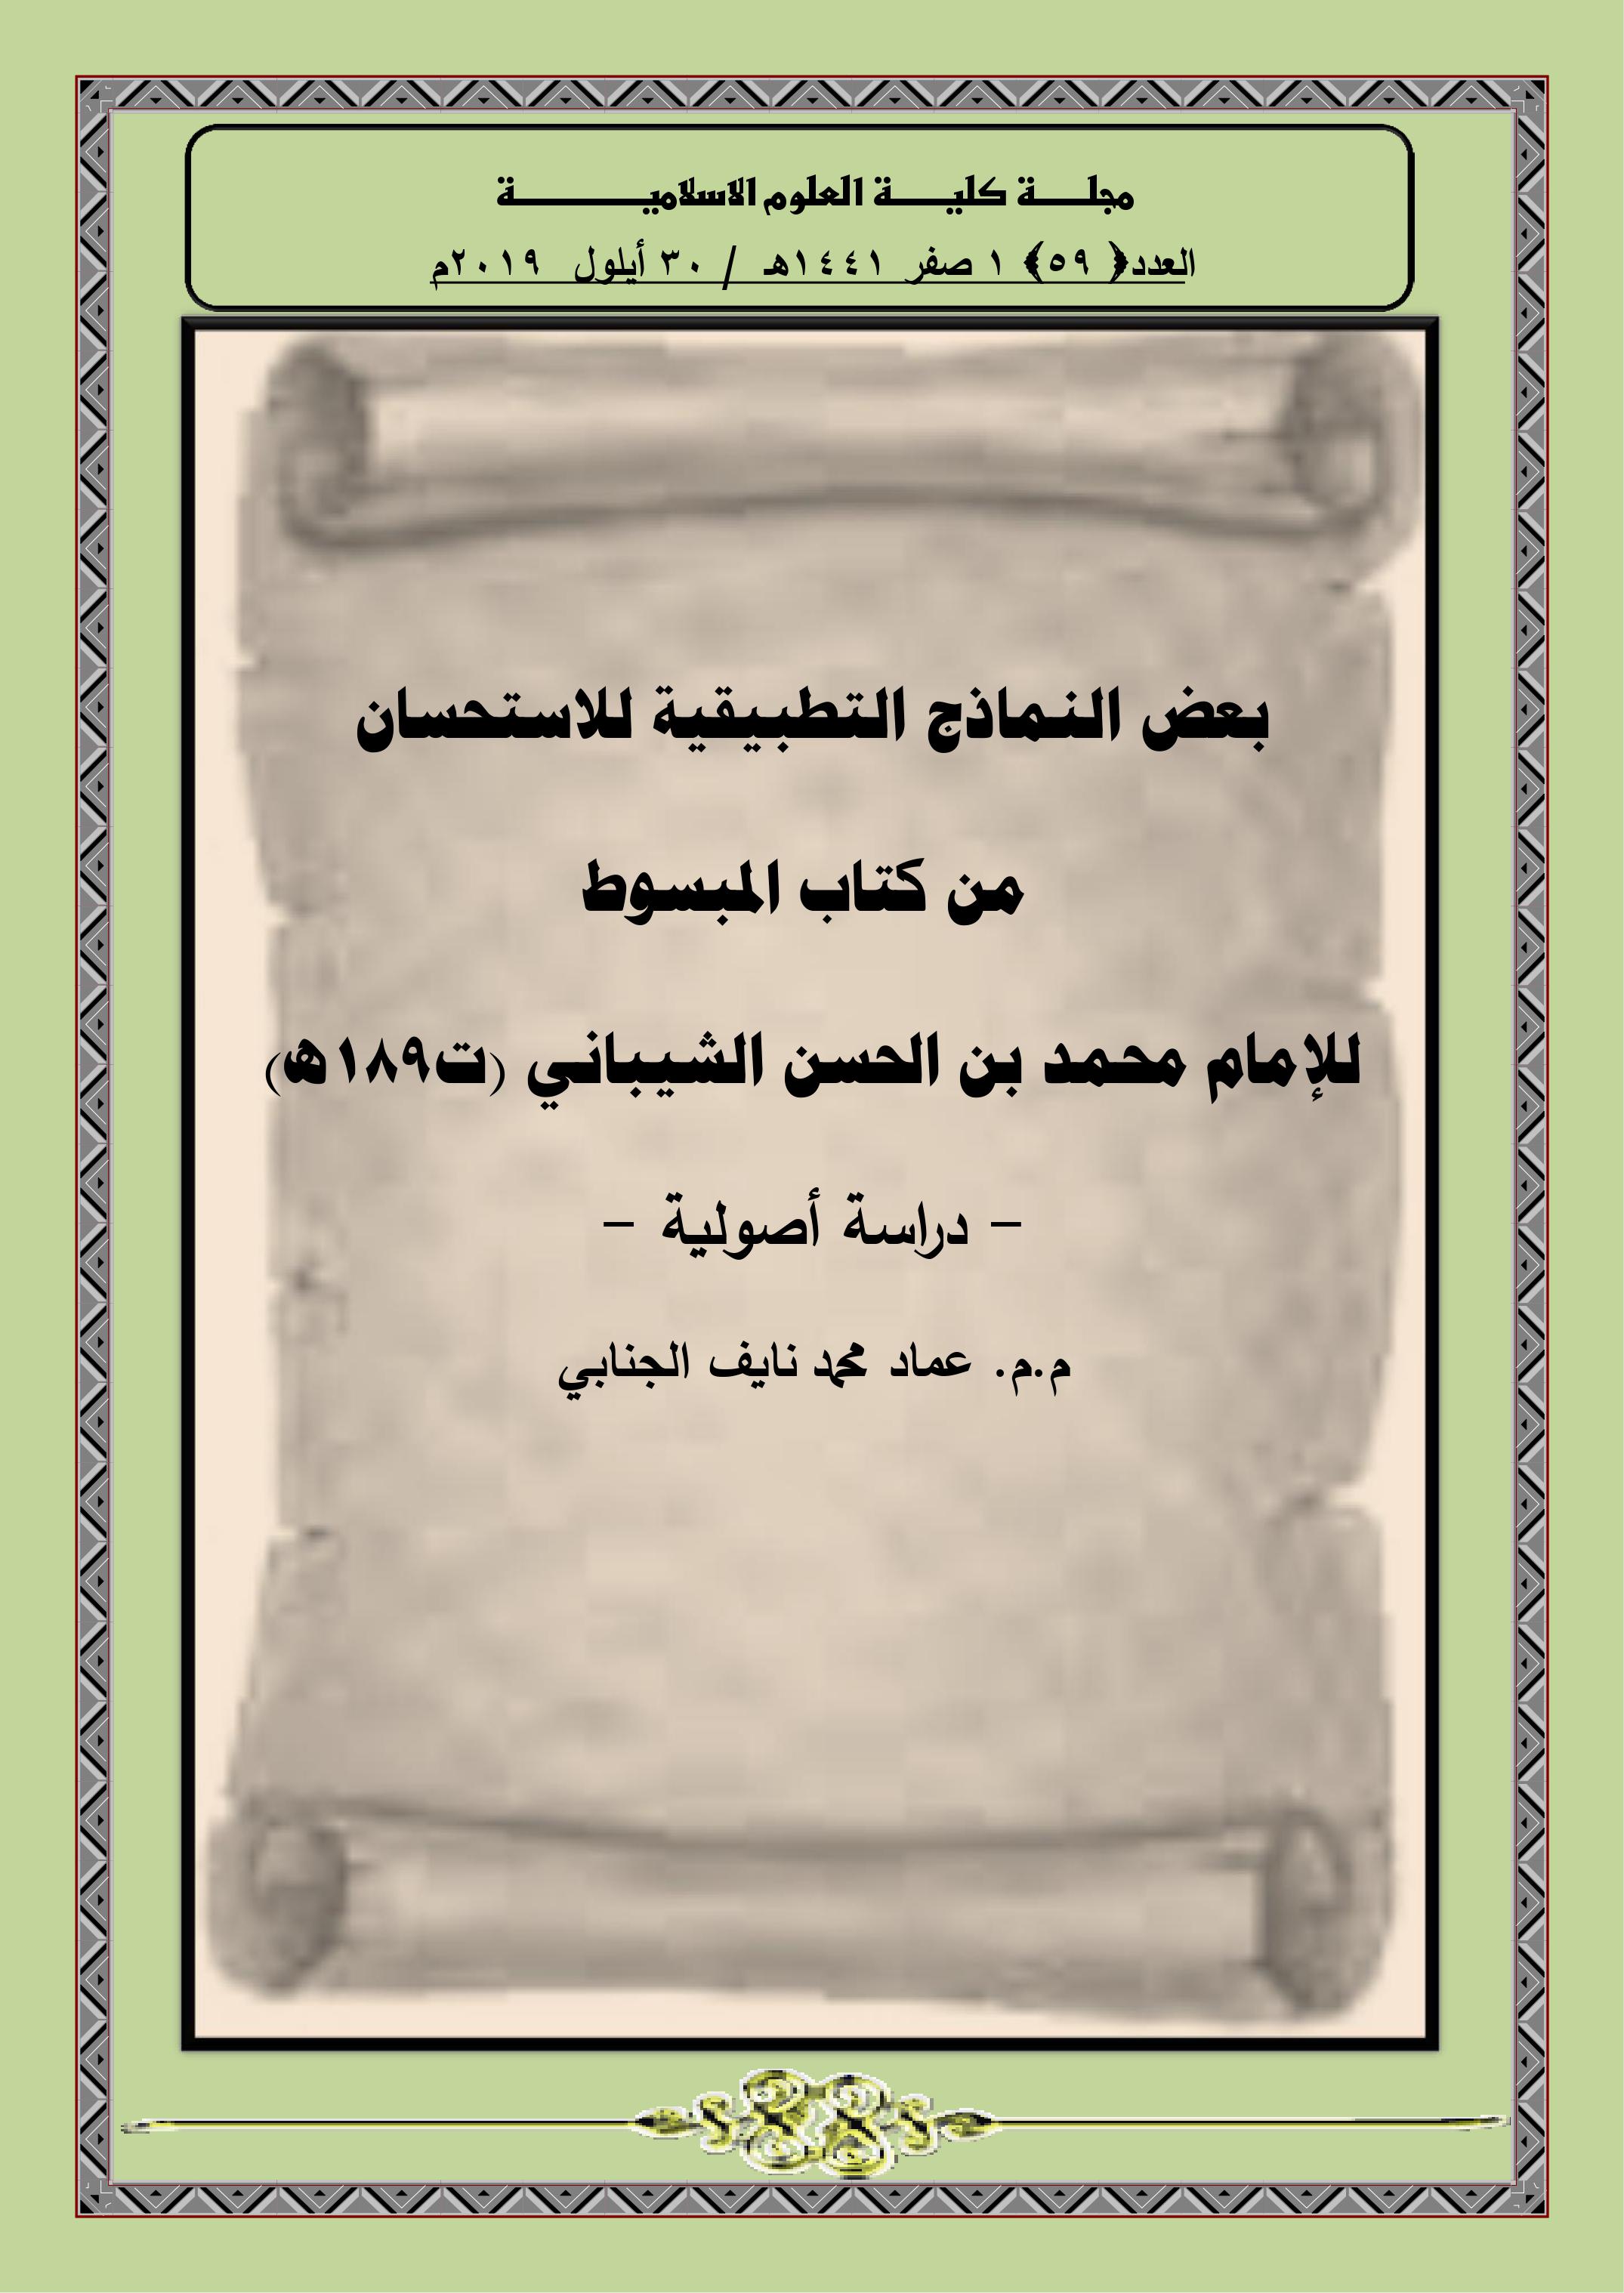 بعض النماذج التطبيقية للاستحسان  من كتاب المبسوط  للإمام محمد بن الحسن الشيباني (ت189ه)